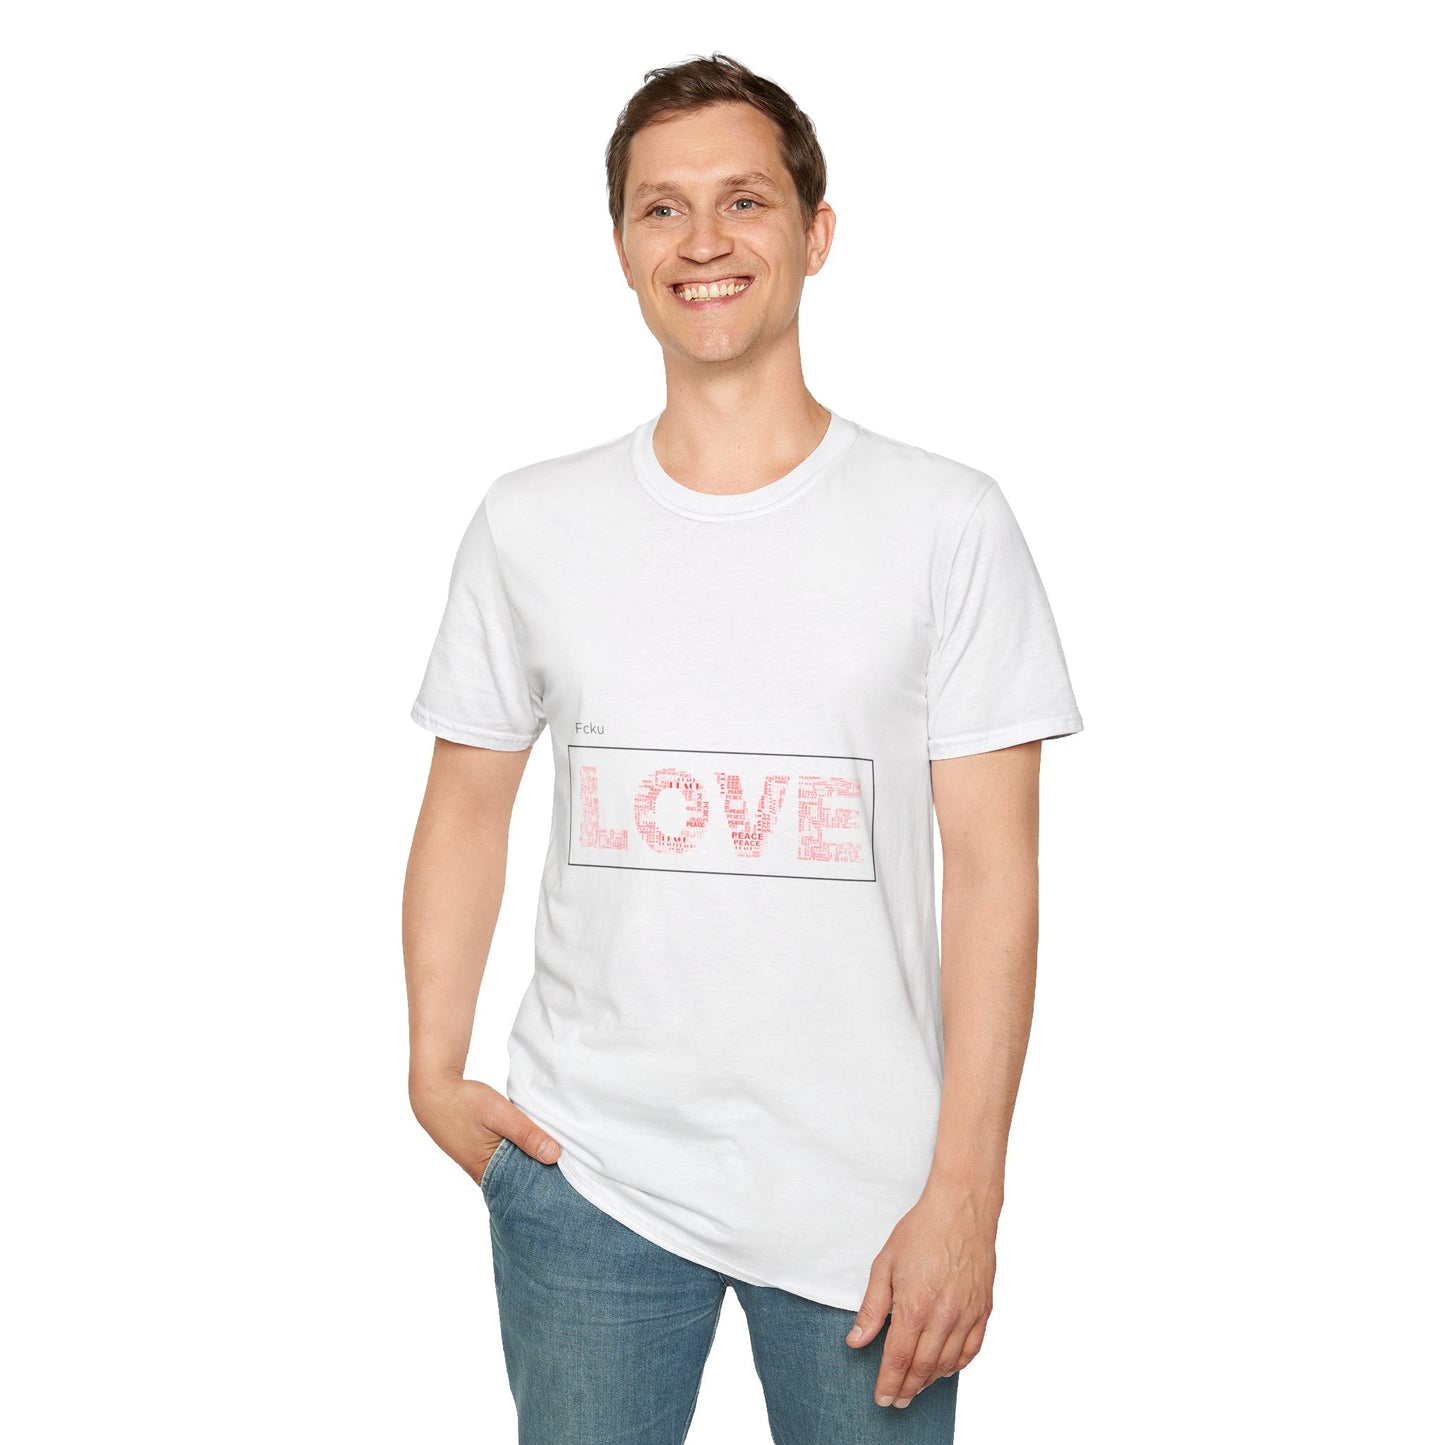 FckU Love T-shirt